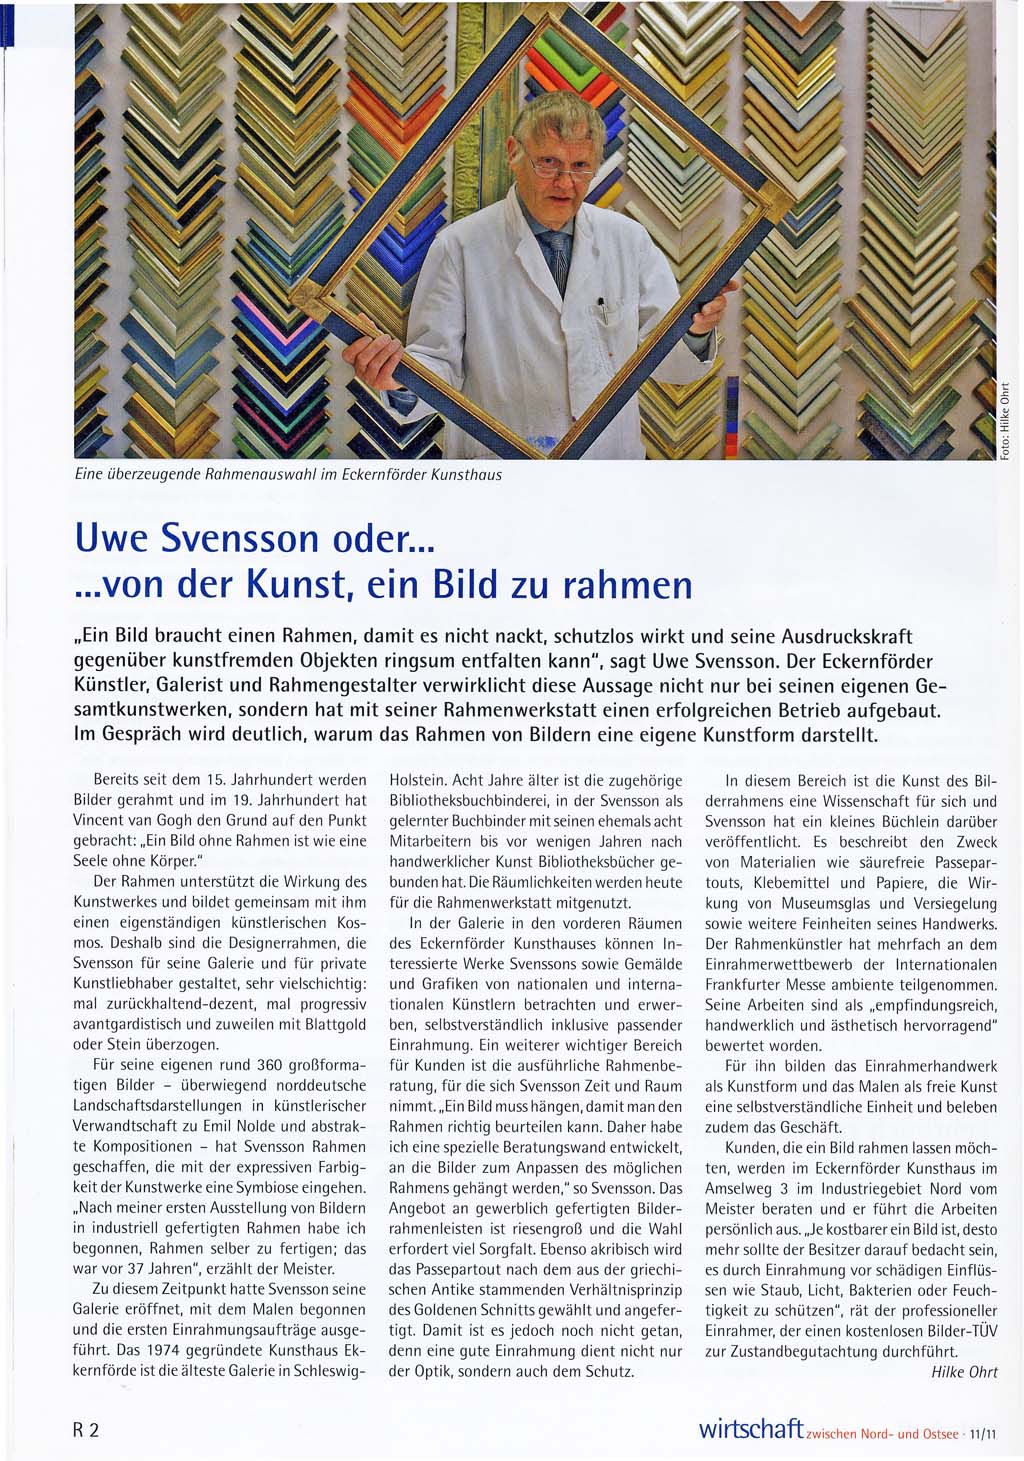 Artikel in der Zeitschrift 'Wirtschaft', November 2011